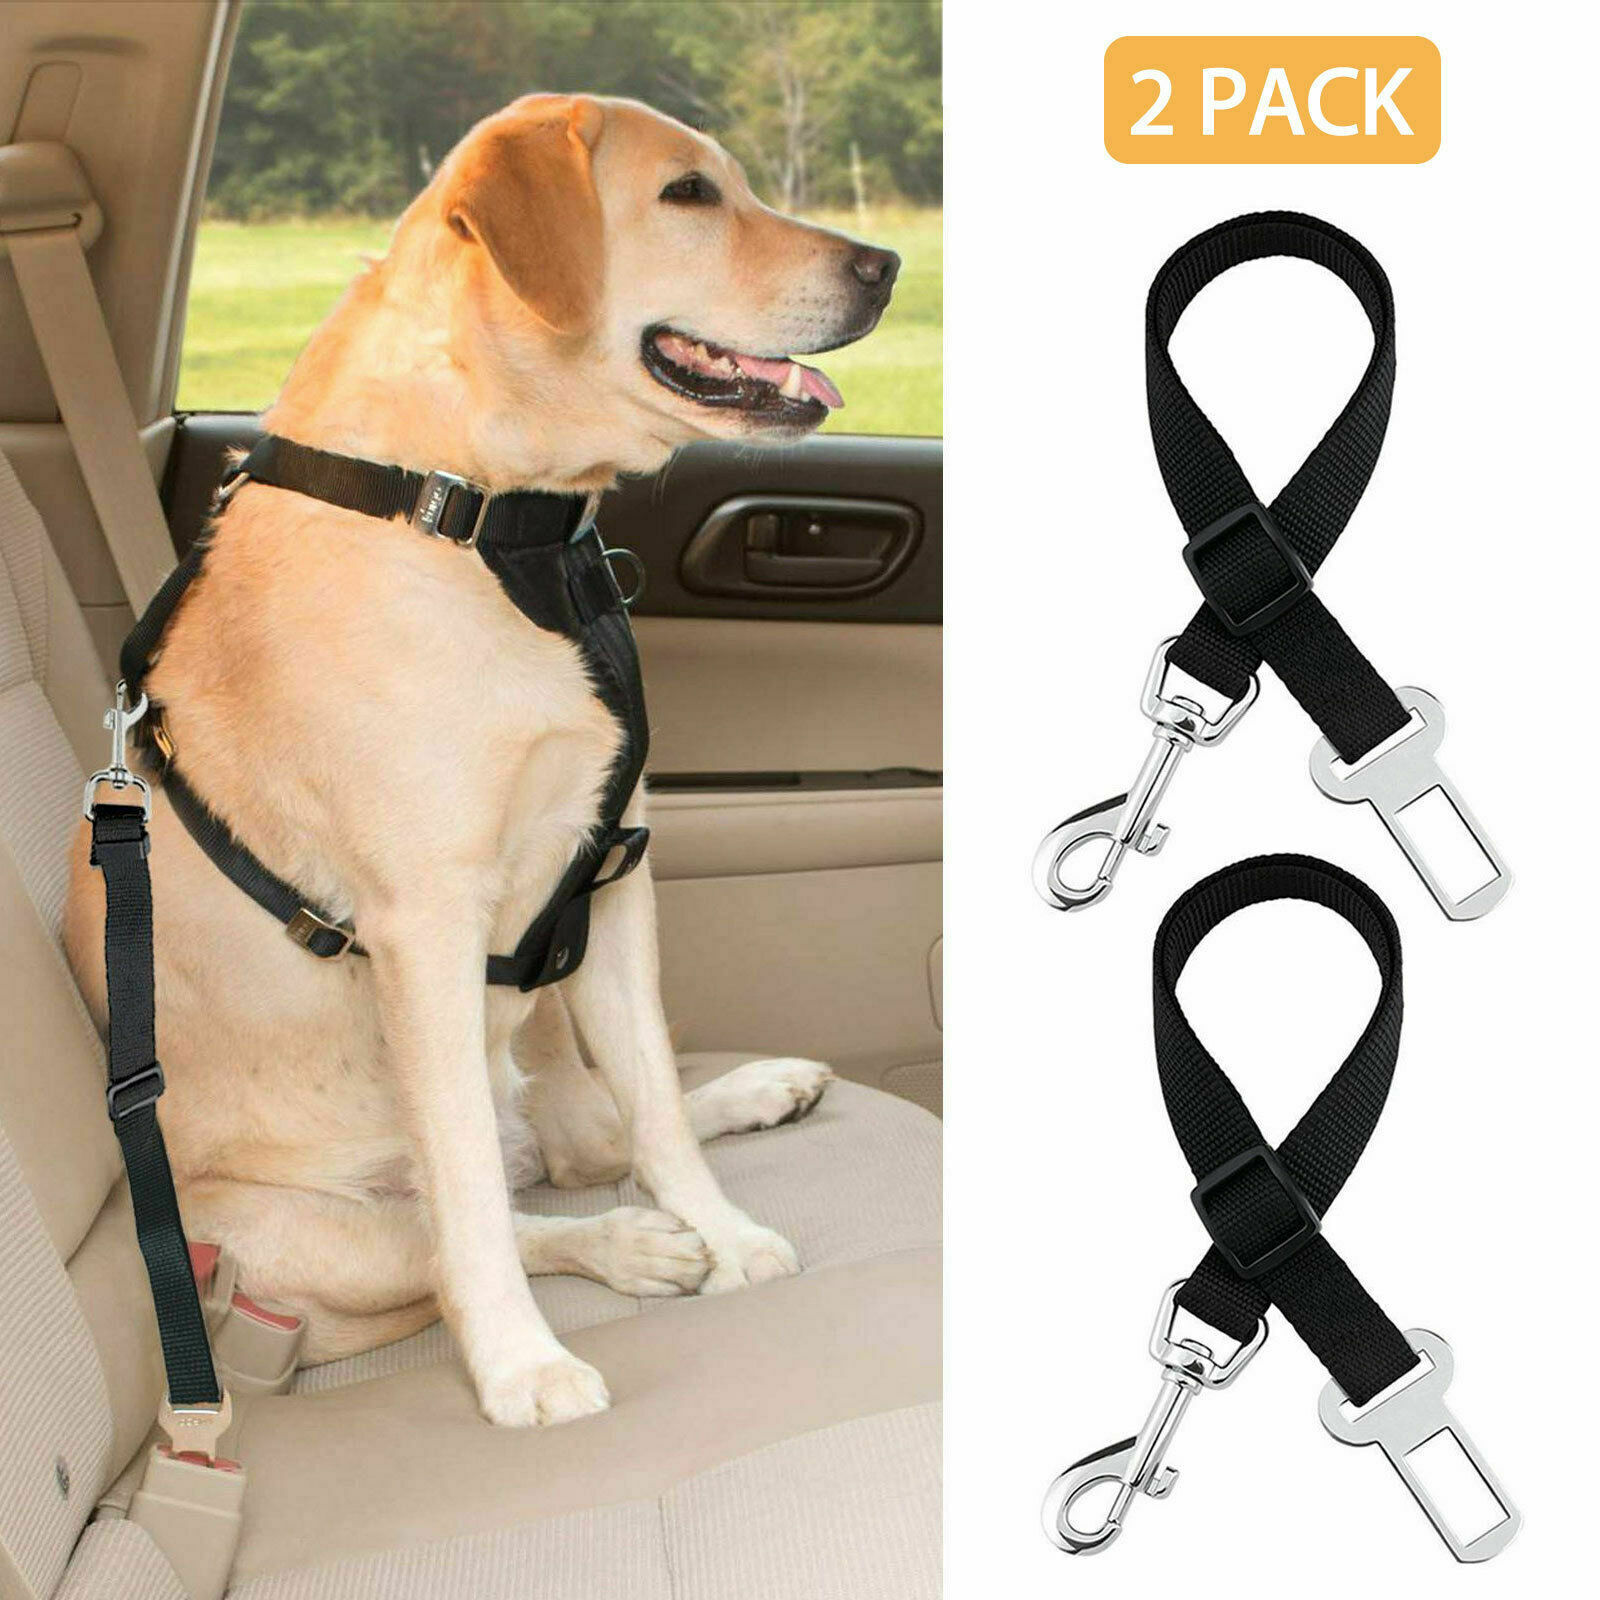 2 Pack Cat Dog Pet Safety Seatbelt For Car Seat Belt Adjustable Harness Lead